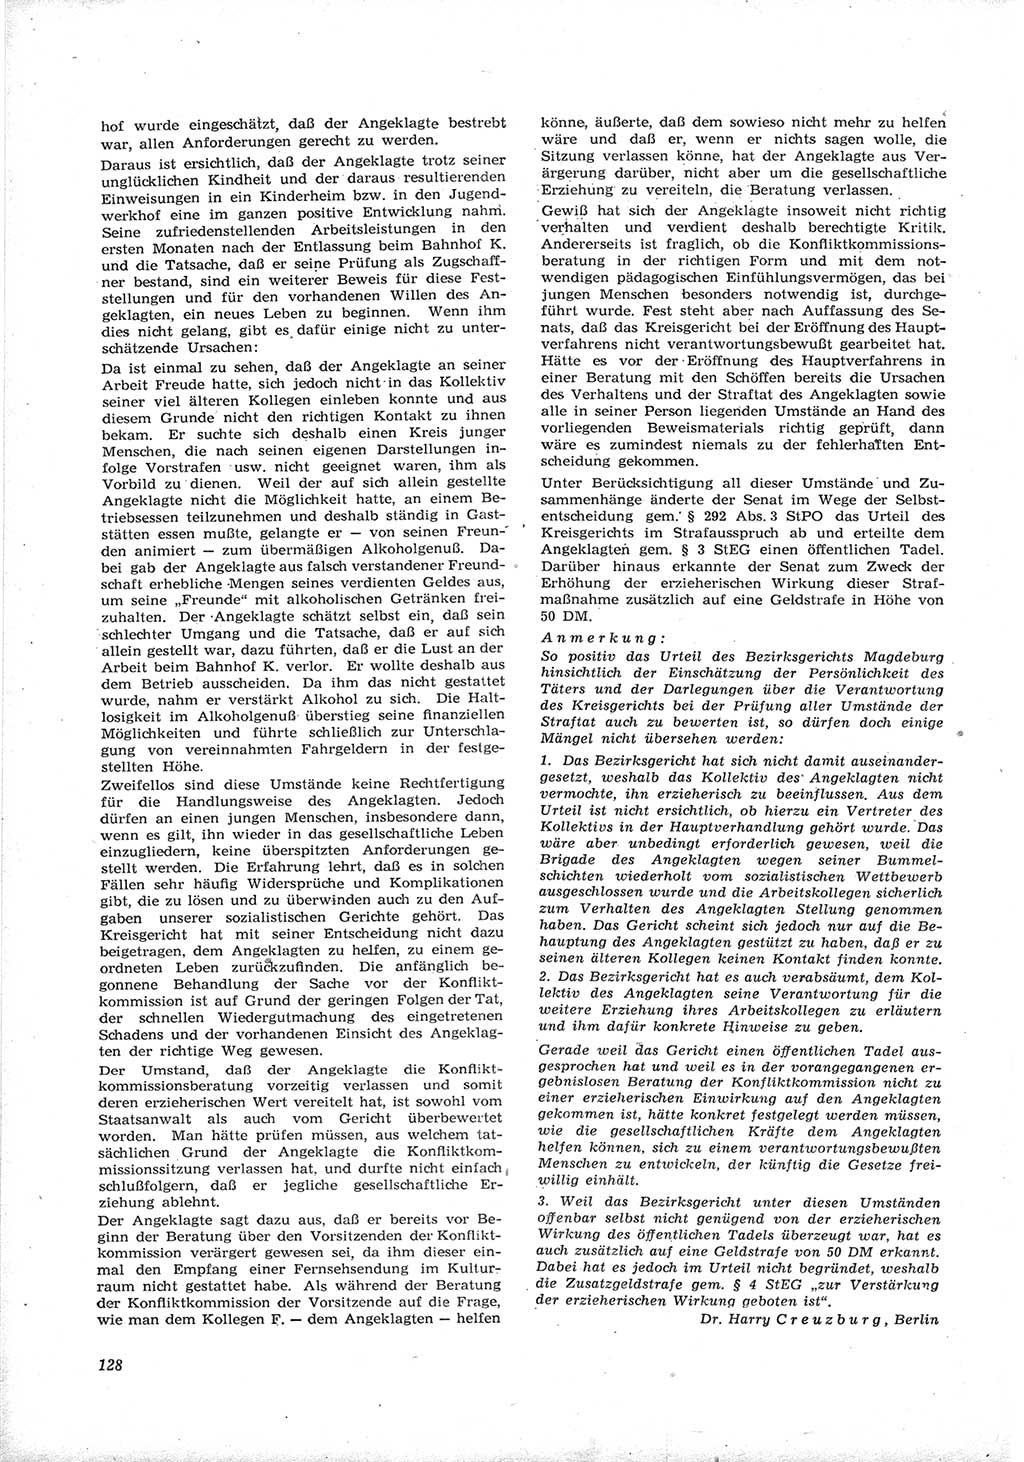 Neue Justiz (NJ), Zeitschrift für Recht und Rechtswissenschaft [Deutsche Demokratische Republik (DDR)], 17. Jahrgang 1963, Seite 128 (NJ DDR 1963, S. 128)